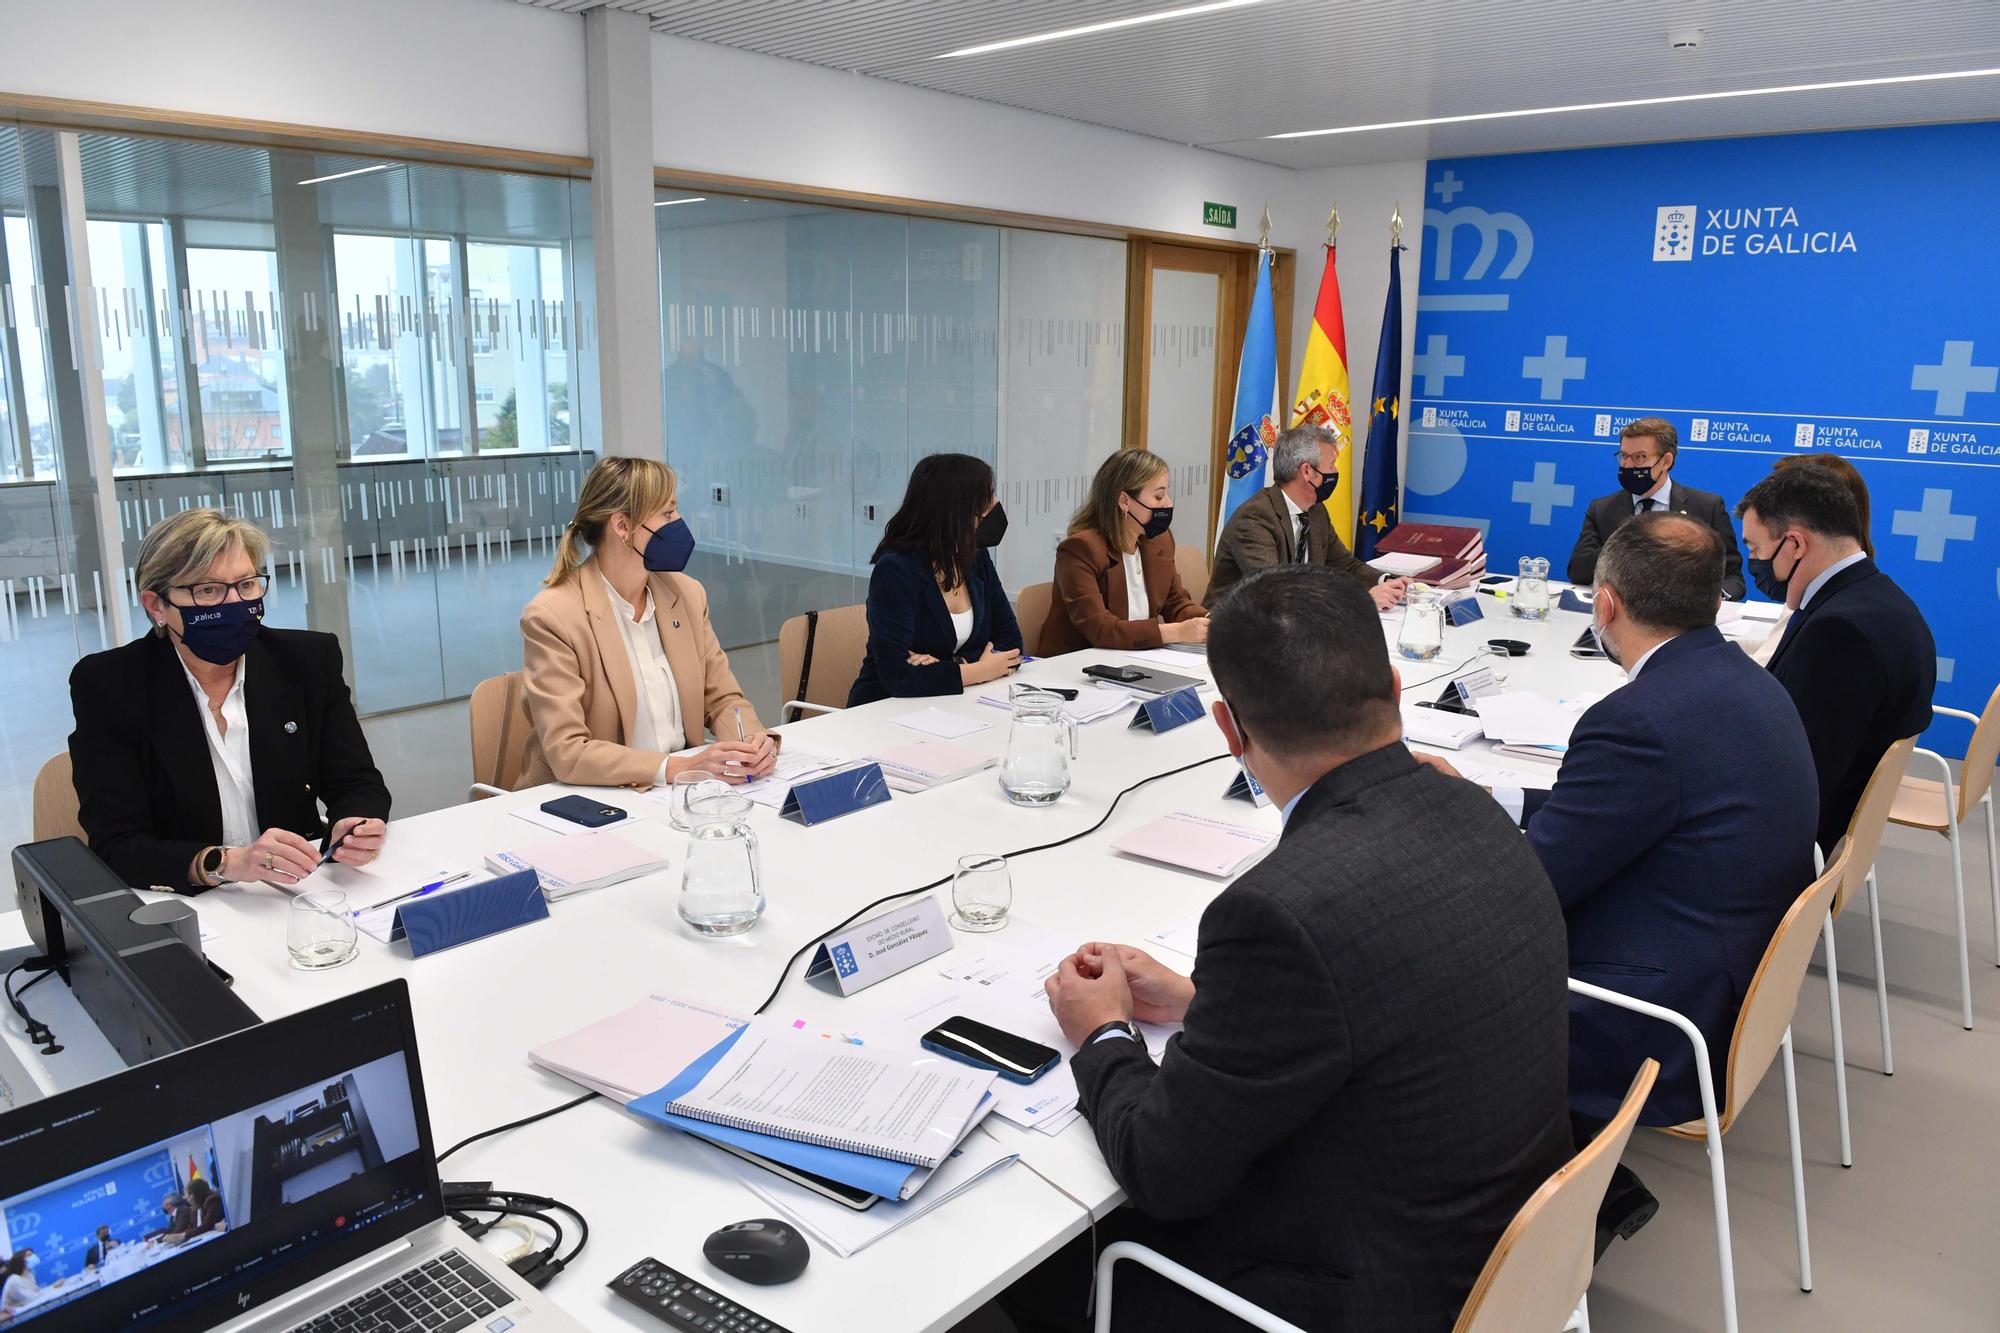 Feijóo preside la reunión del Consello de la Xunta en el Espazo Amizar